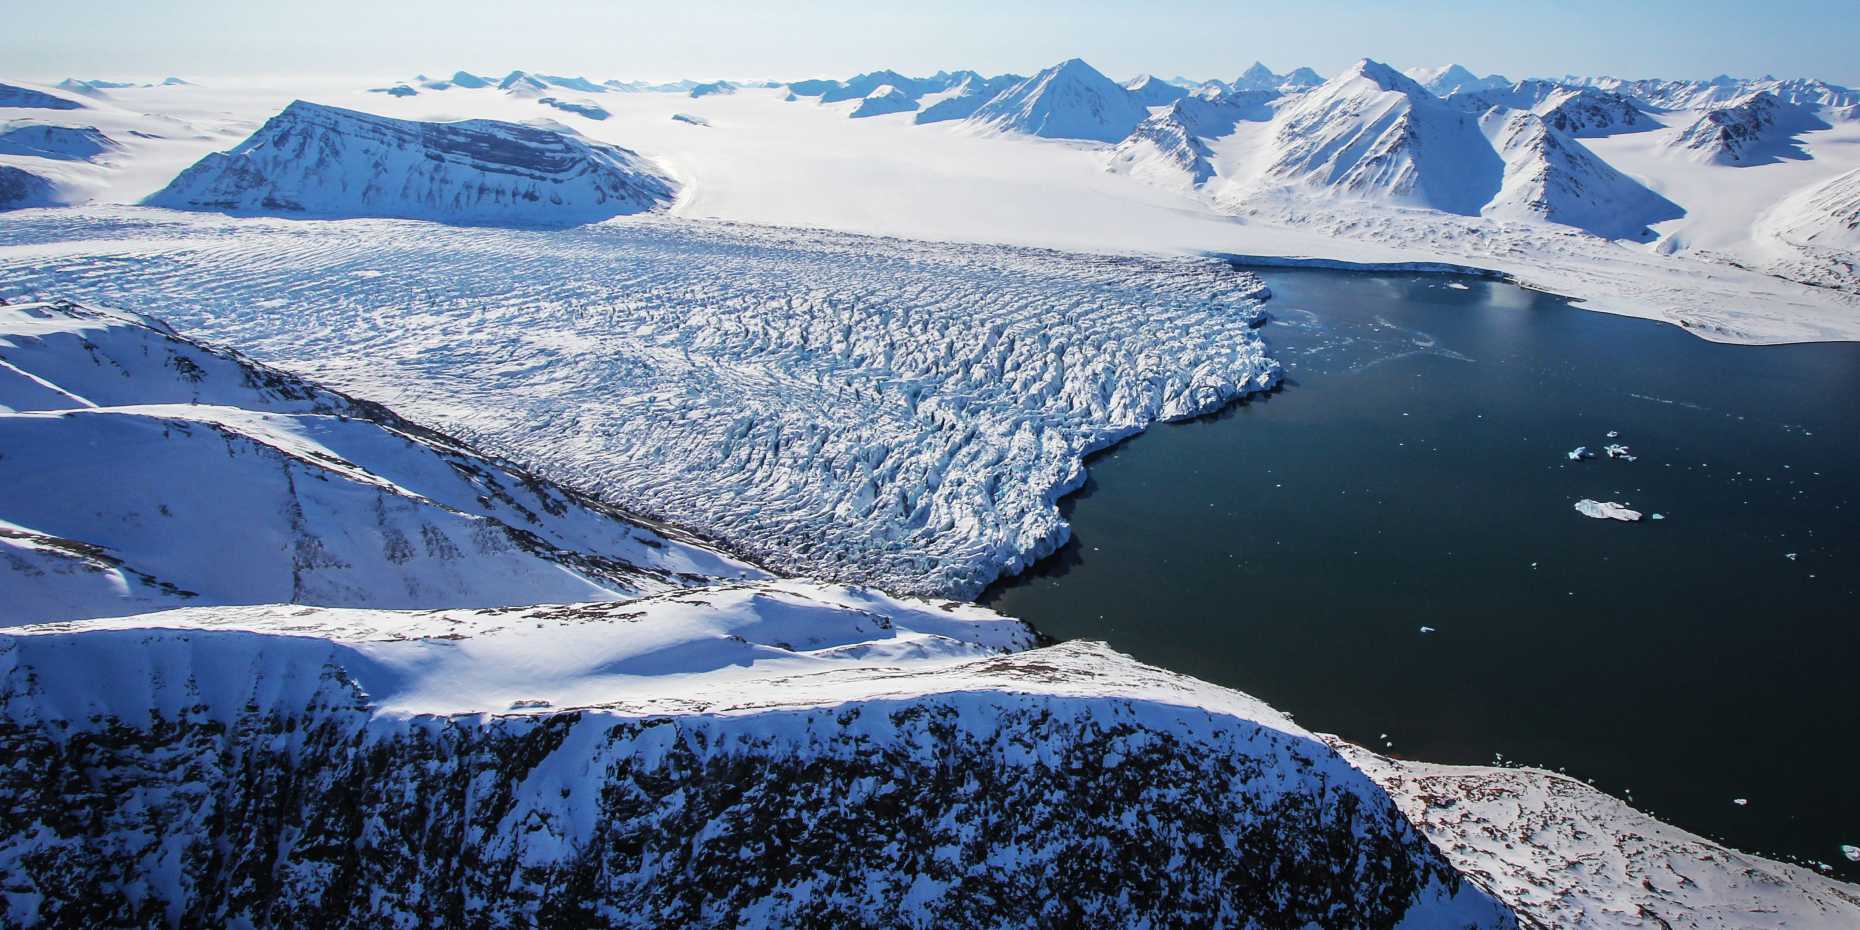 Vergrösserte Ansicht: Arktische Inseln wie Baffin Island oder Spitzbergen (hier im Bild) weisen die grössten Eisvolumen ausserhalb der Eisschilde Grönlands und der Antarktis auf. (Bild: Katrin Lindbaeck)